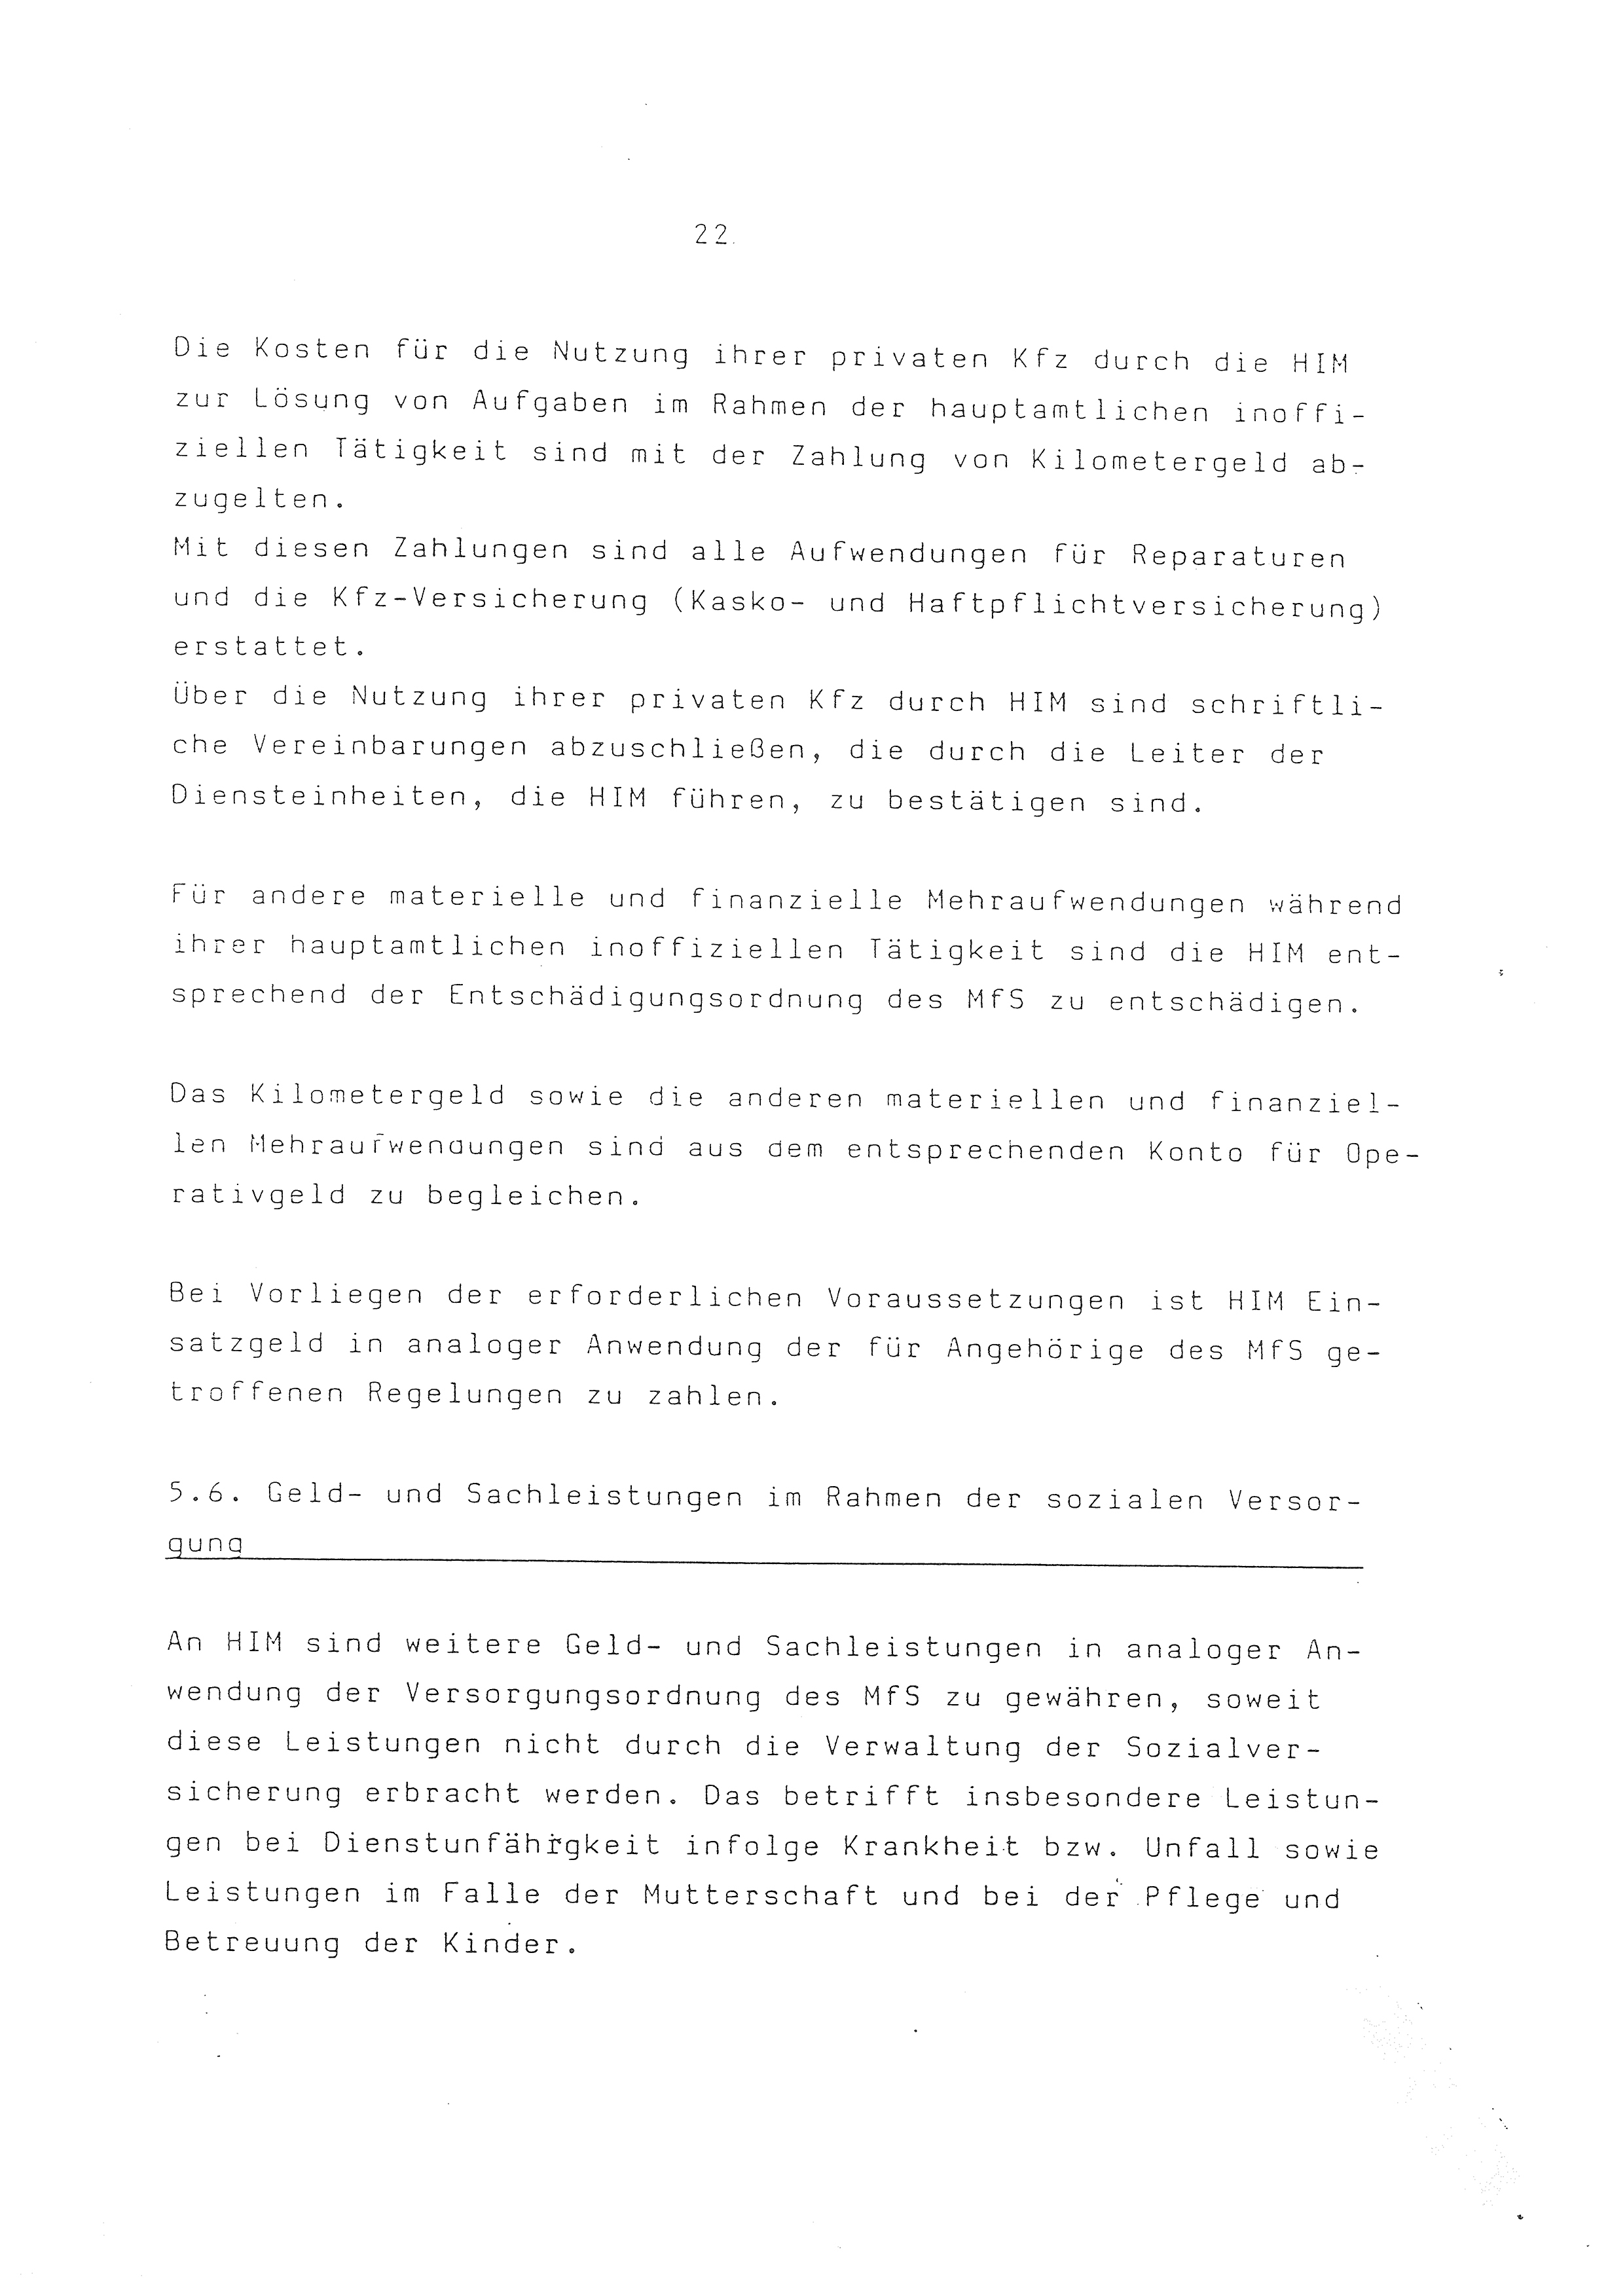 2. Durchführungsbestimmung zur Richtlinie 1/79 über die Arbeit mit hauptamtlichen Mitarbeitern des MfS (HIM), Deutsche Demokratische Republik (DDR), Ministerium für Staatssicherheit (MfS), Der Minister (Mielke), Geheime Verschlußsache (GVS) ooo8-44/86, Berlin 1986, Seite 22 (2. DB RL 1/79 DDR MfS Min. GVS ooo8-44/86 1986, S. 22)